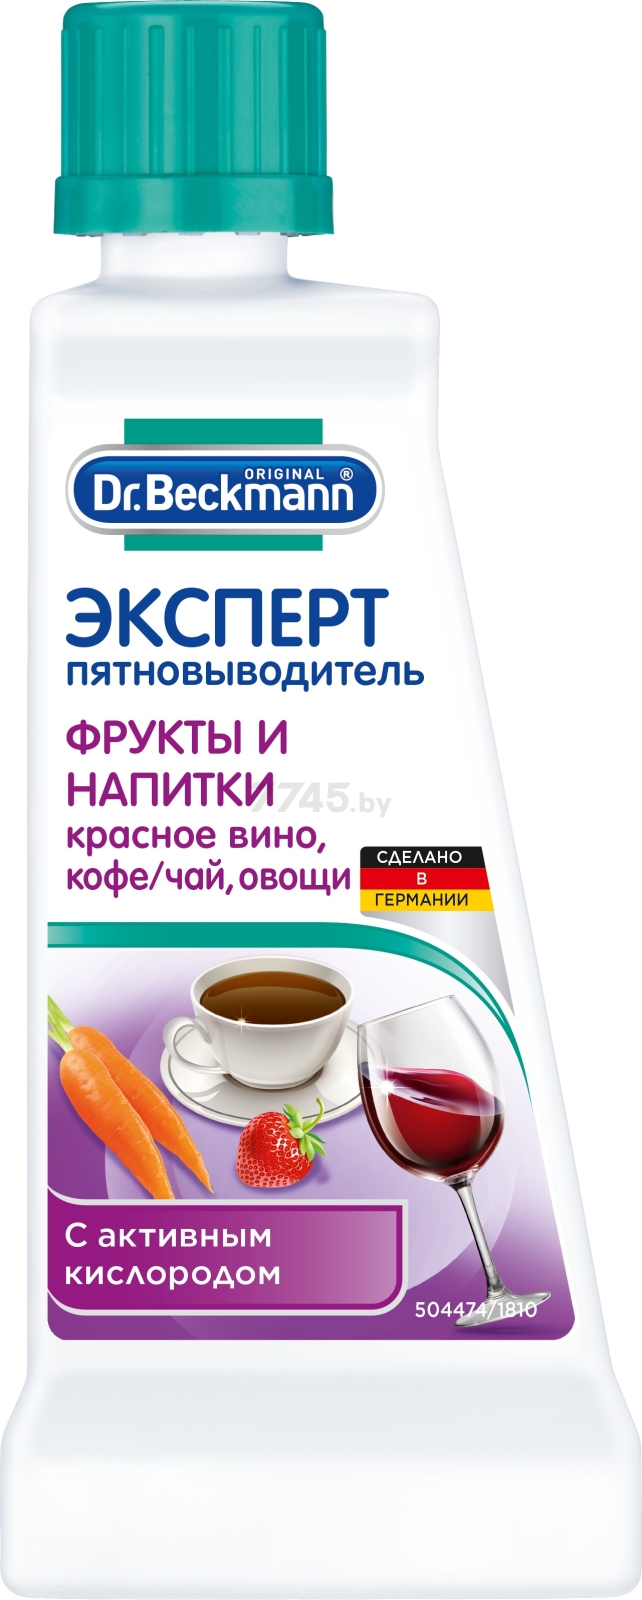 Пятновыводитель DR.BECKMANN Эксперт Фрукты и напитки 50 г (4008455004082)